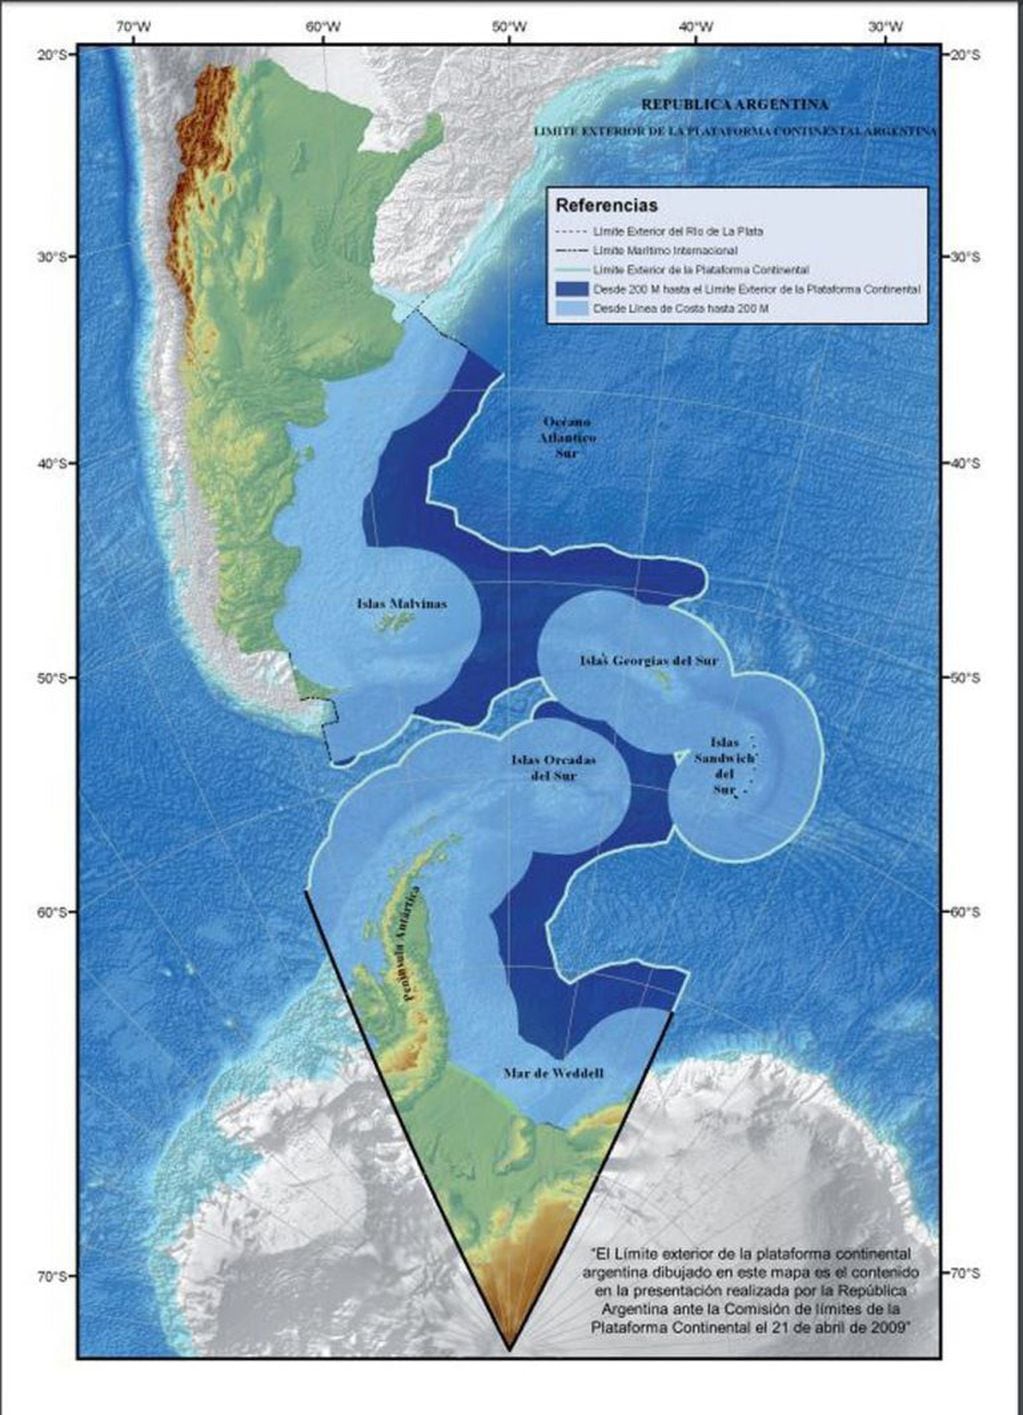 Mapa de Argentina con sus espacios marítimos e insulares correspondientes, de acuerdo a la extensión del límite exterior de la plataforma continental.